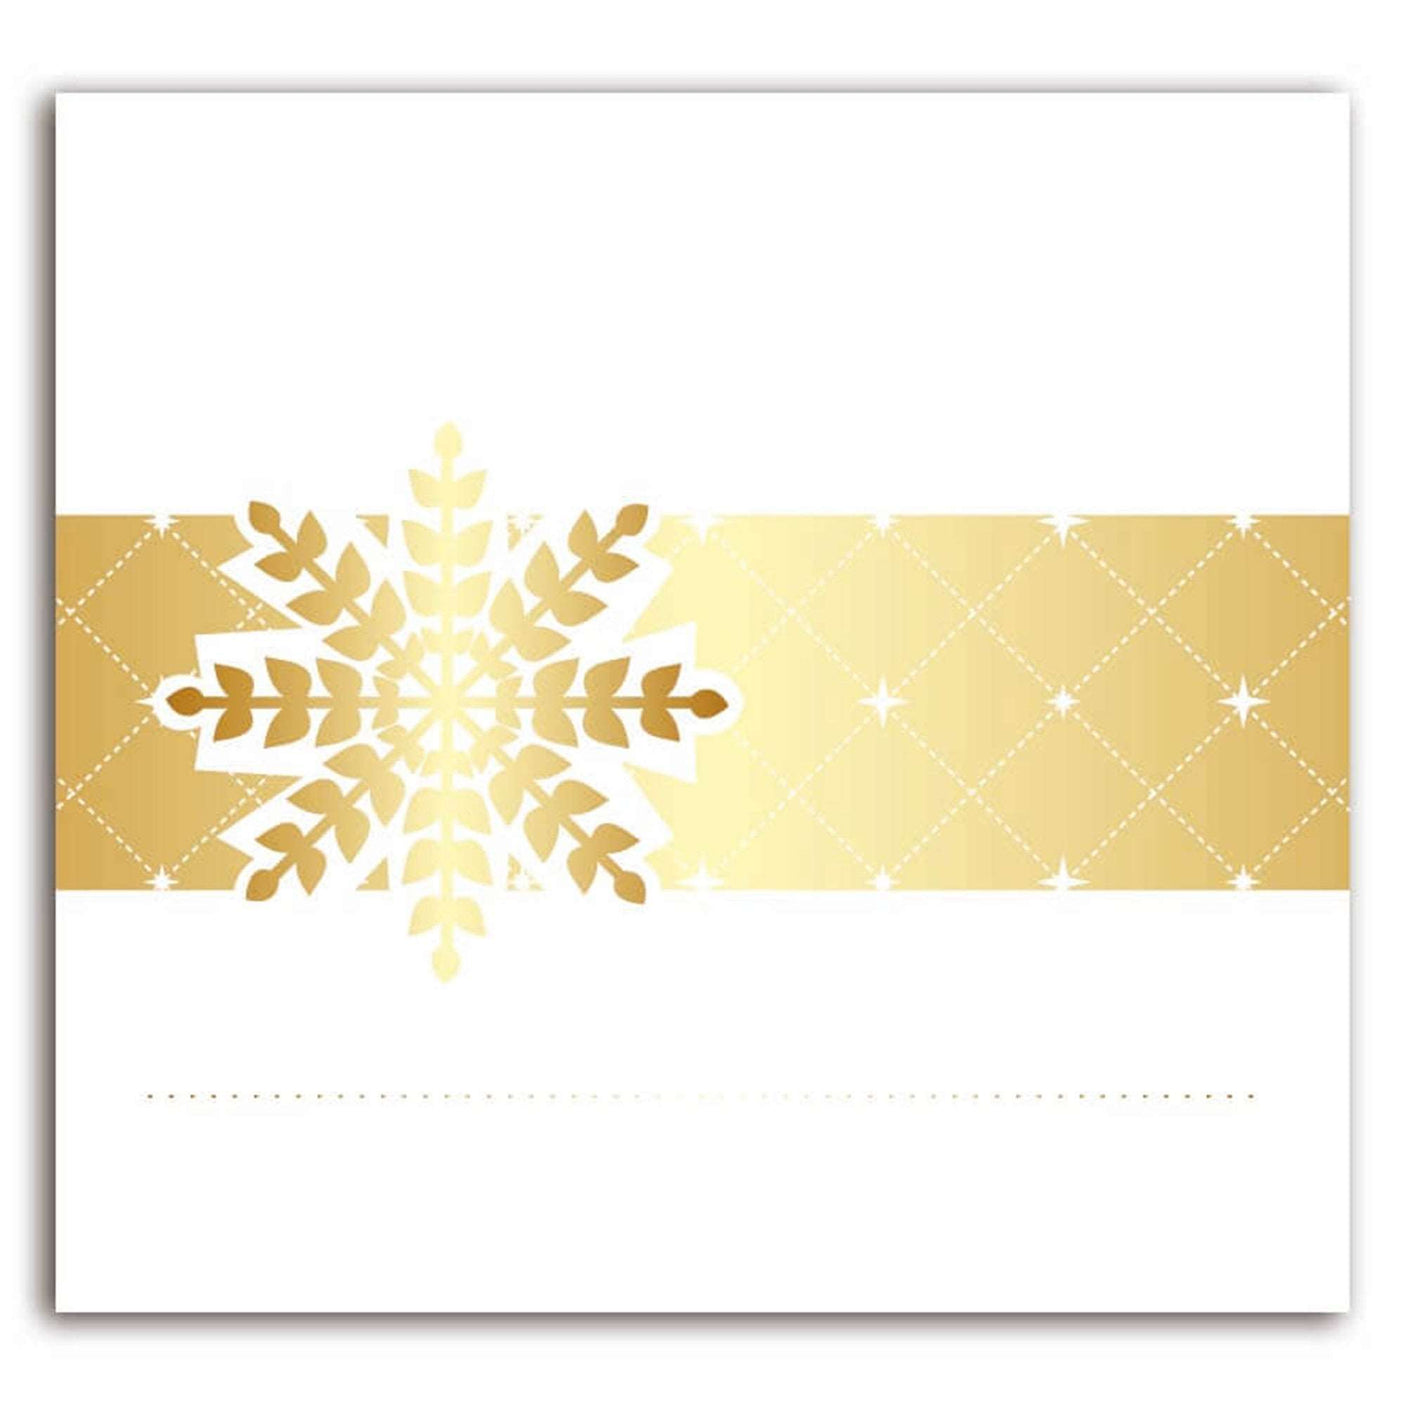 8 marques places - Flocons de neige - Finition blanc et or à chaud - Spécial Réveillon